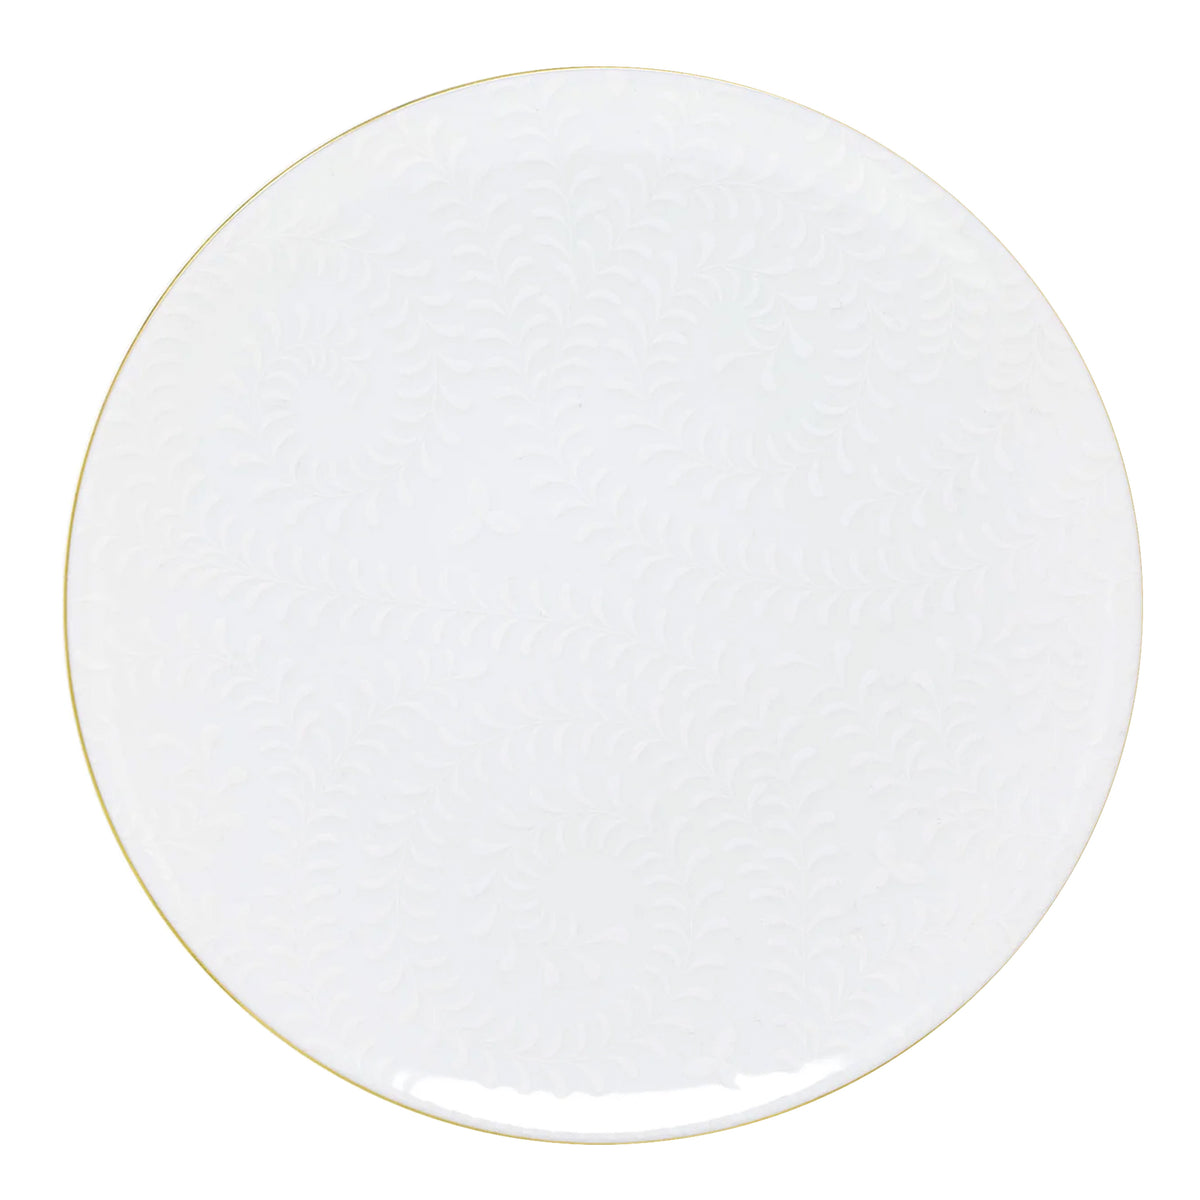 ARJUNA blanc sur blanc filet Or - Assiette de présentation